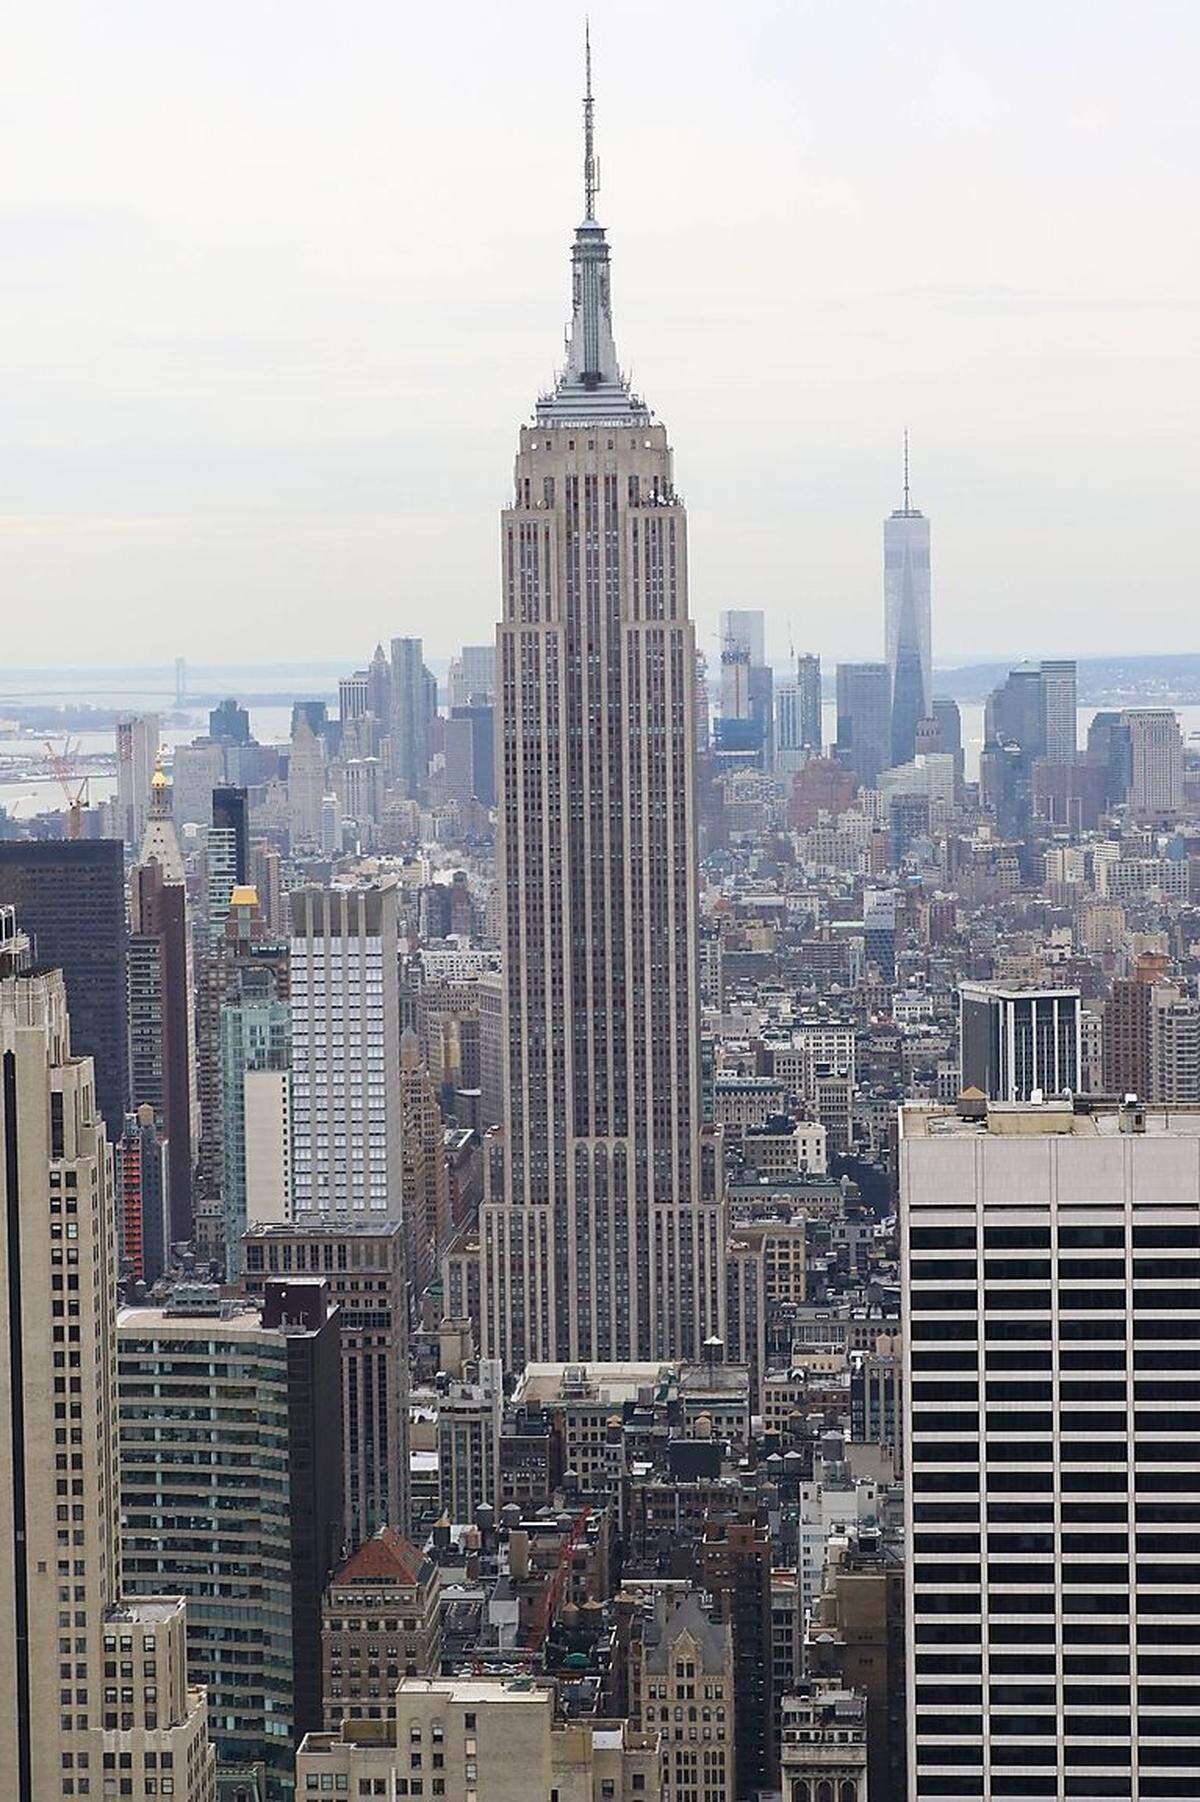 Der älteste Megawolkenkratzer ist übrigens das weltberühmte Empire State Building in New York City. Der in nur einem Jahr 1931 erbaute Turm war bis 1972 das höchste Gebäude der Welt. Das (mit Antenne) 443,2 Meter hohe Haus sollte als das "achte Weltwunder" gelten, hoffte man zur Zeit des Baus. Heute liegt das Empire State Building auf Platz 25 der höchsten Häuser der Welt.